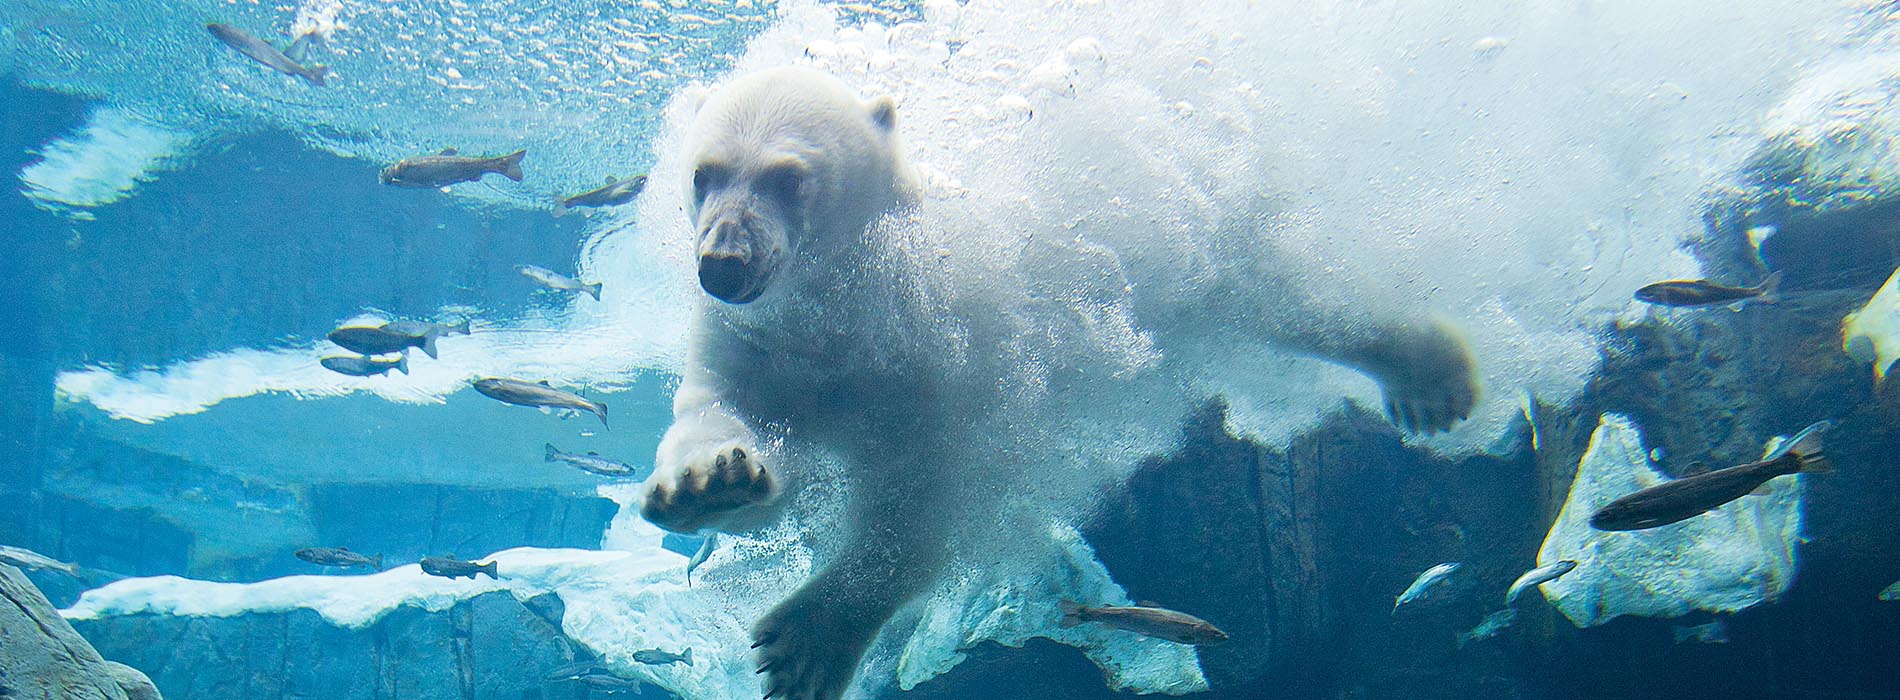 A polar bear diving into water